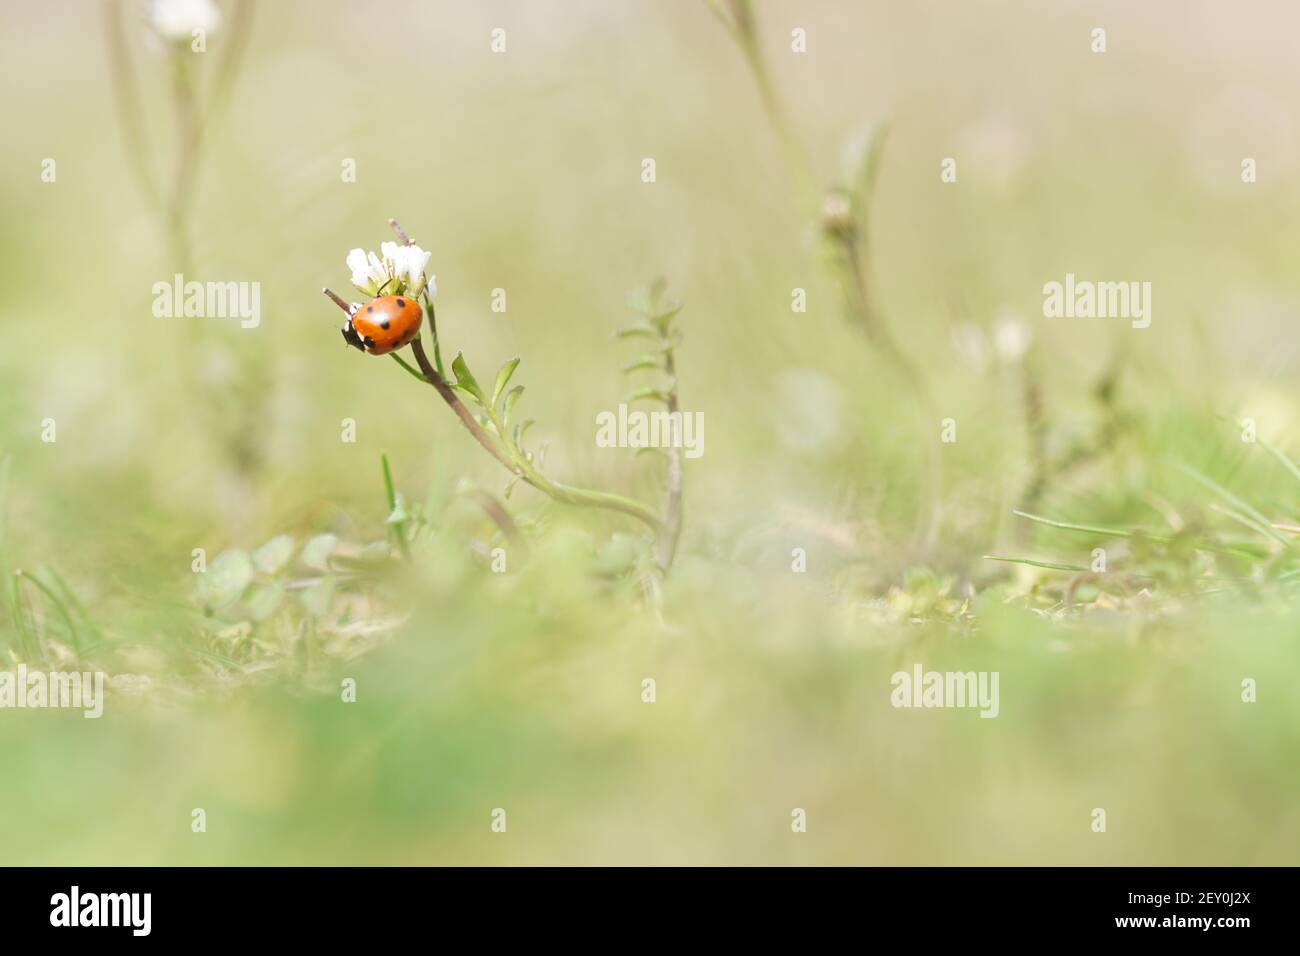 spring time - macro shot of ladybug sitting on flower Stock Photo